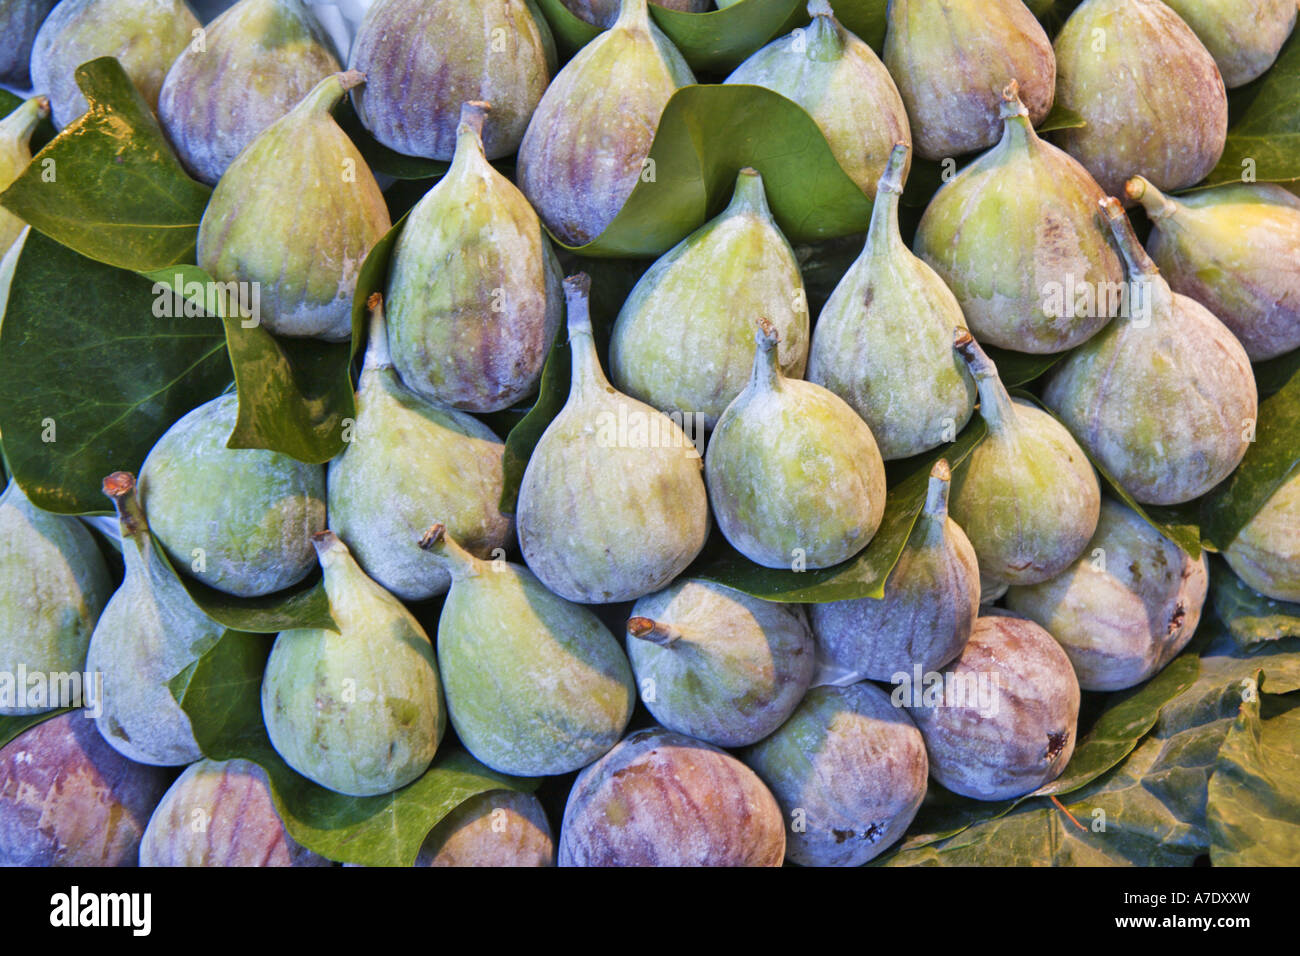 edible fig, common fig (Ficus carica), figs at the market stand, Spain, Katalonia, La Boqueria, Barcelona Stock Photo